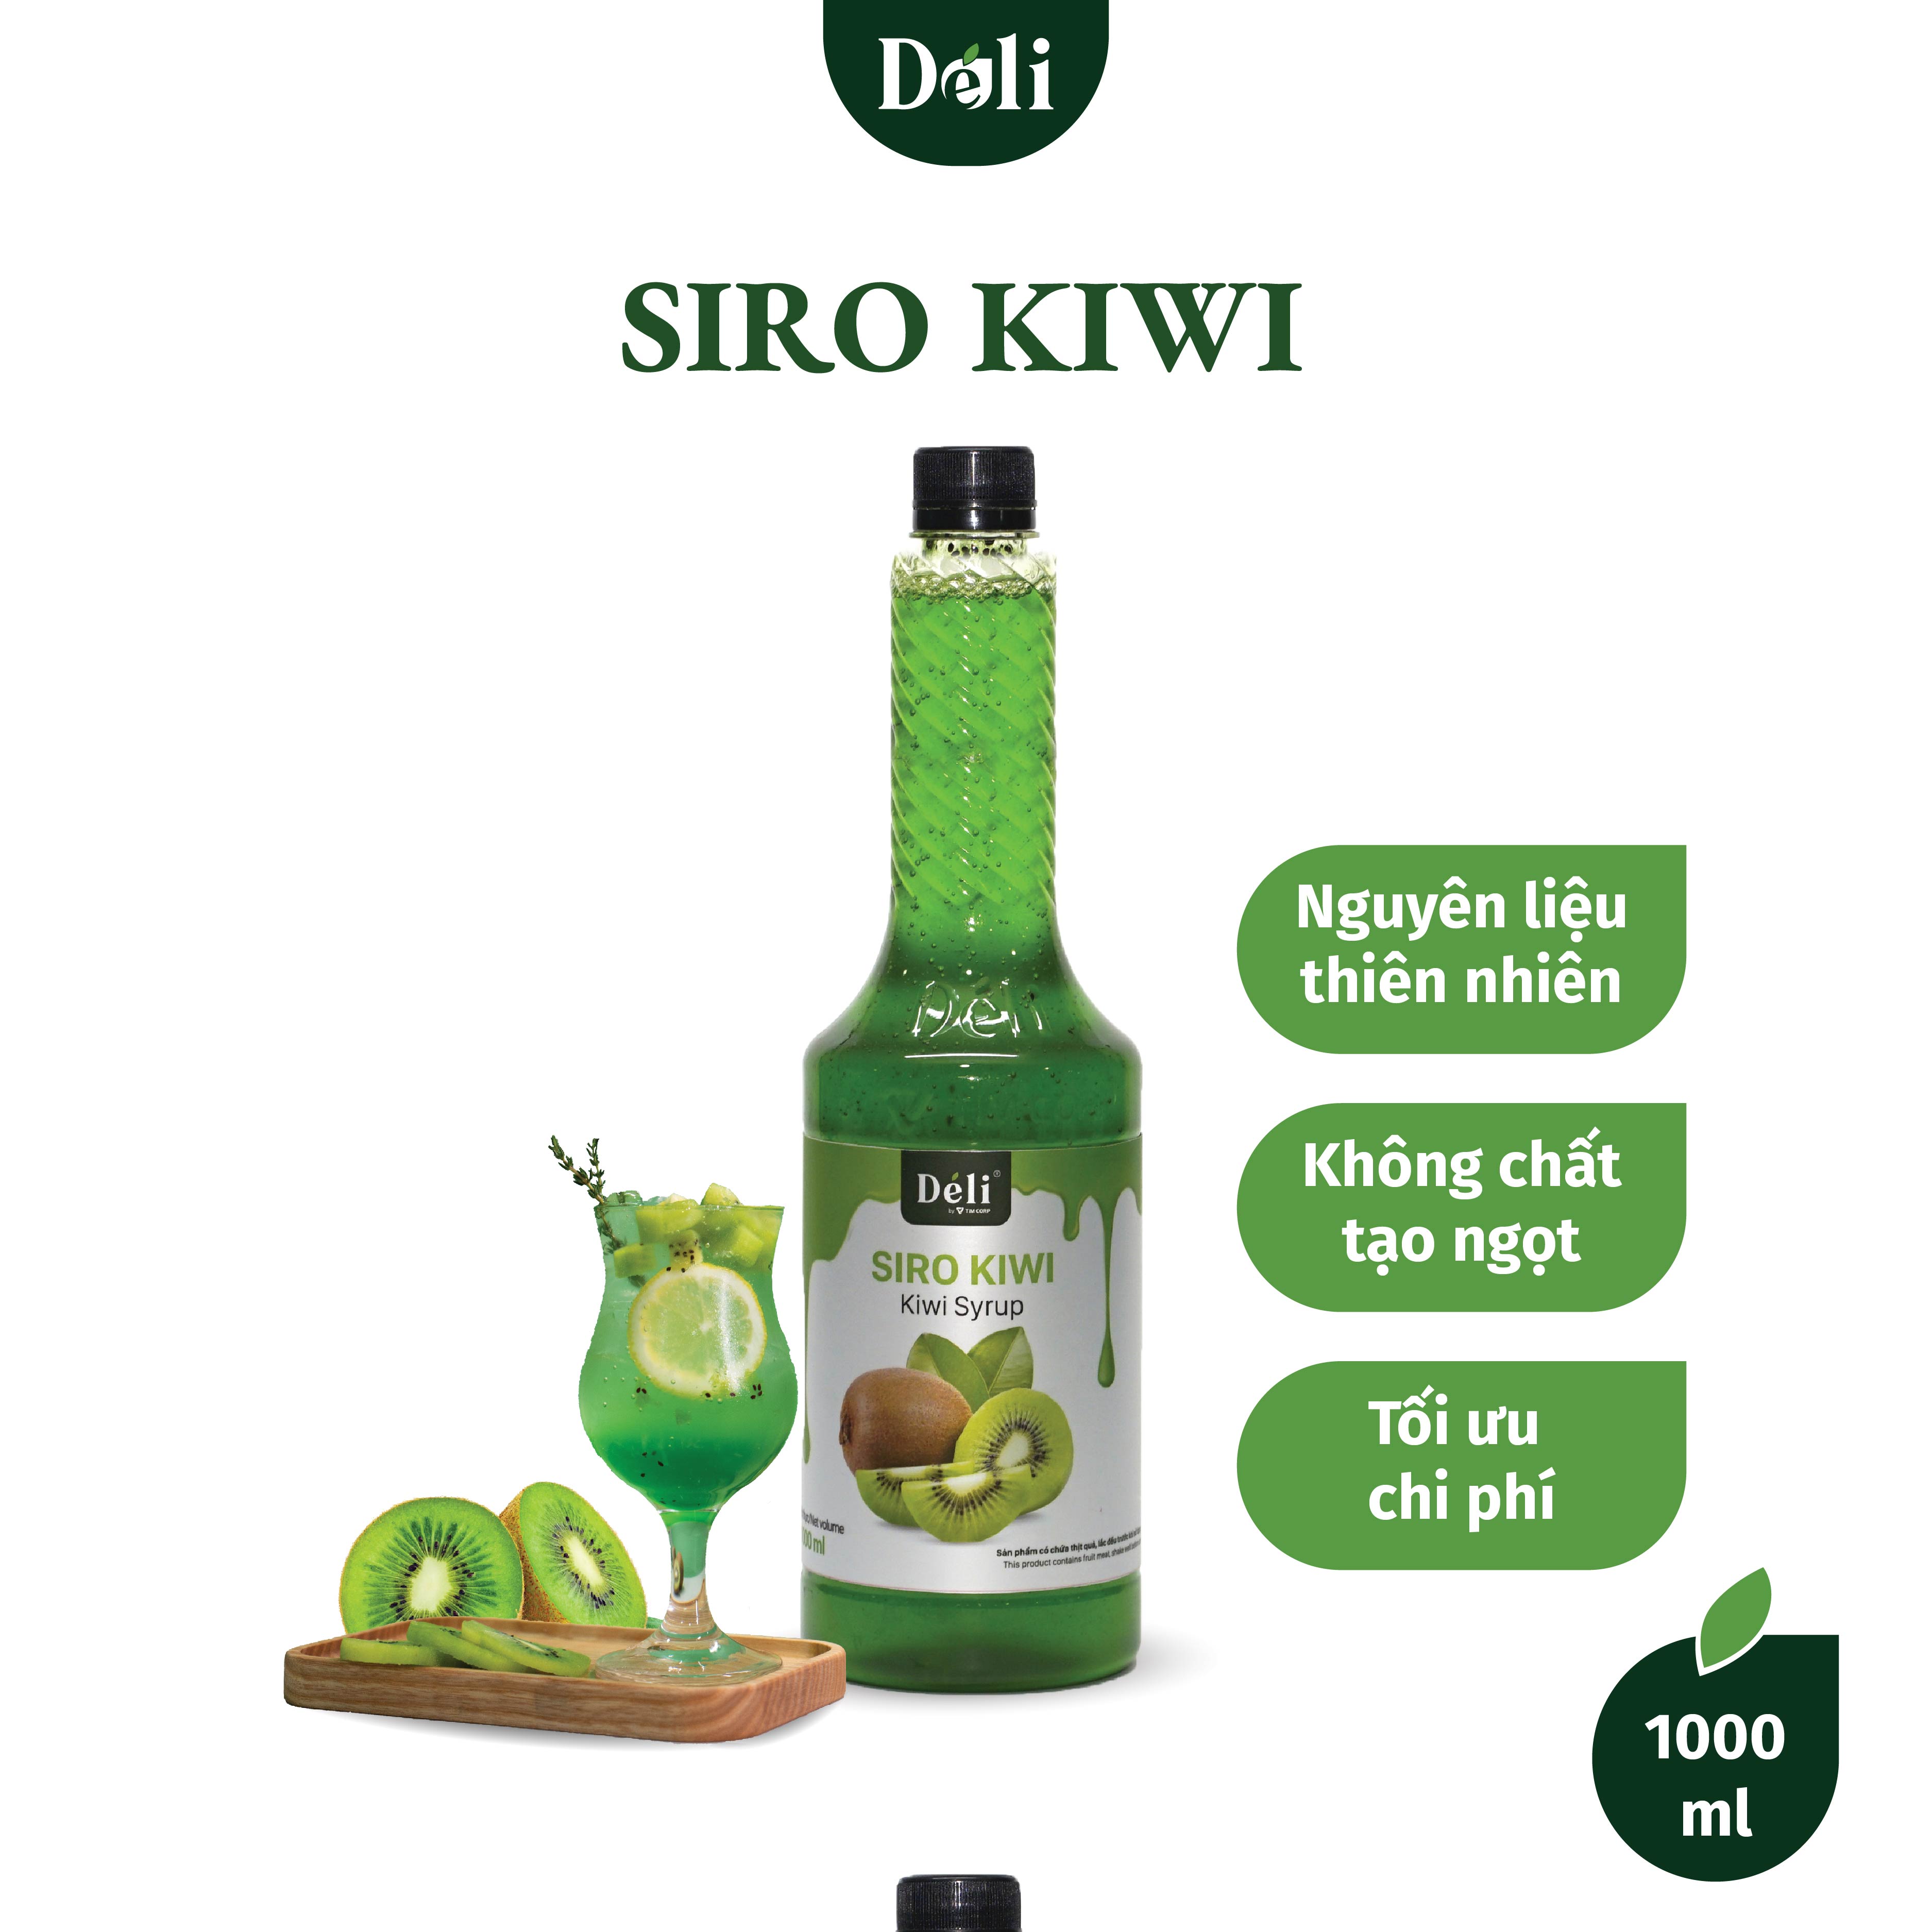 Siro kiwi Déli chai 1lit, HSD: 12 tháng  [CHUYÊN SỈ] Nguyên liệu pha chế trà trái cây, soda,...